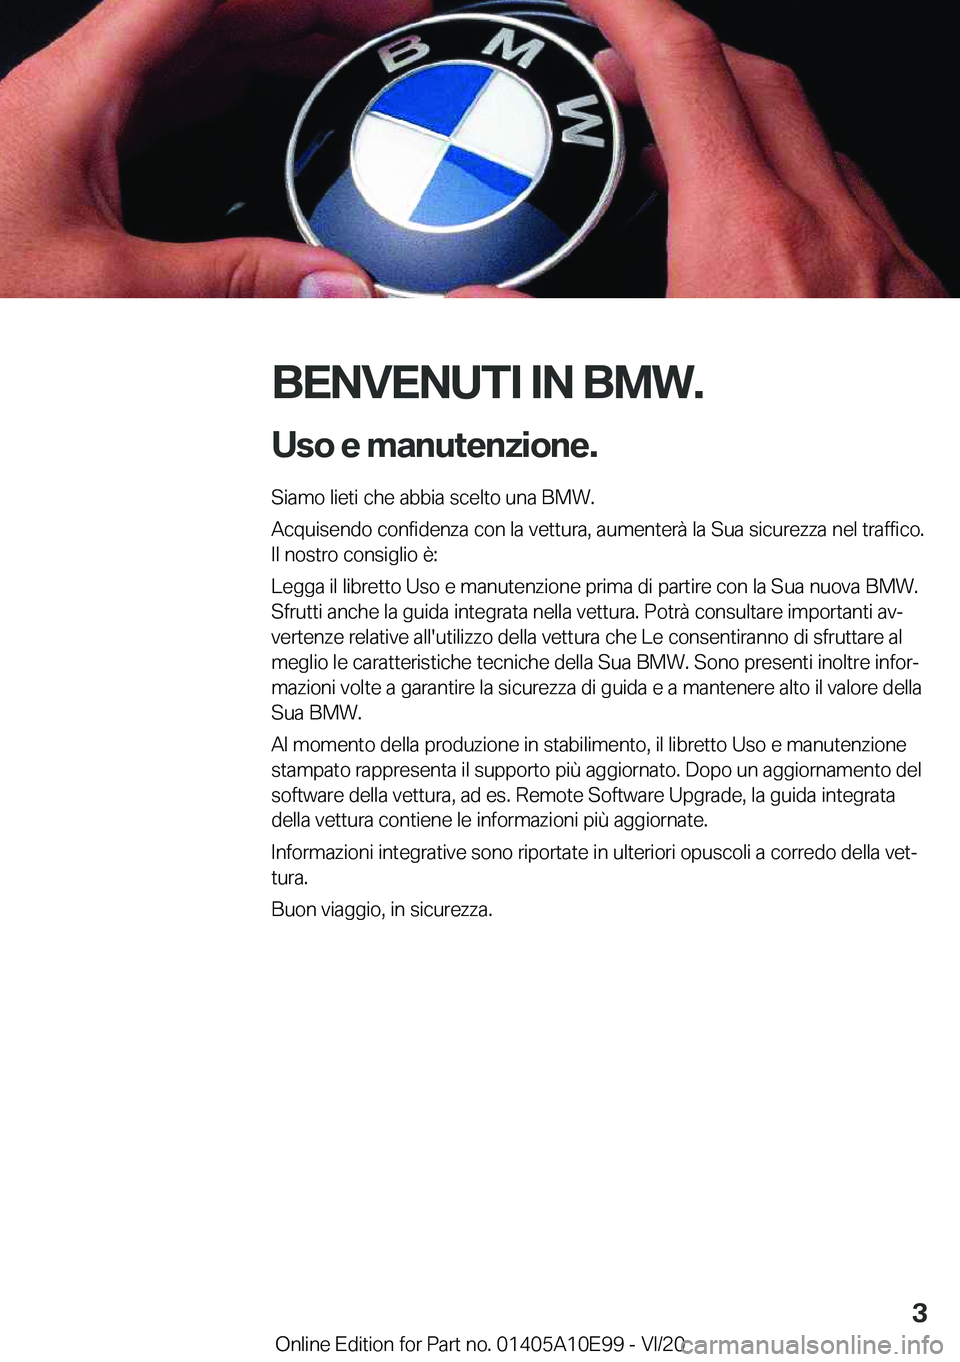 BMW X3 2021  Libretti Di Uso E manutenzione (in Italian) �B�E�N�V�E�N�U�T�I��I�N��B�M�W�.�U�s�o��e��m�a�n�u�t�e�n�z�i�o�n�e�.
�S�i�a�m�o��l�i�e�t�i��c�h�e��a�b�b�i�a��s�c�e�l�t�o��u�n�a��B�M�W�.
�A�c�q�u�i�s�e�n�d�o��c�o�n�f�i�d�e�n�z�a��c�o�n�